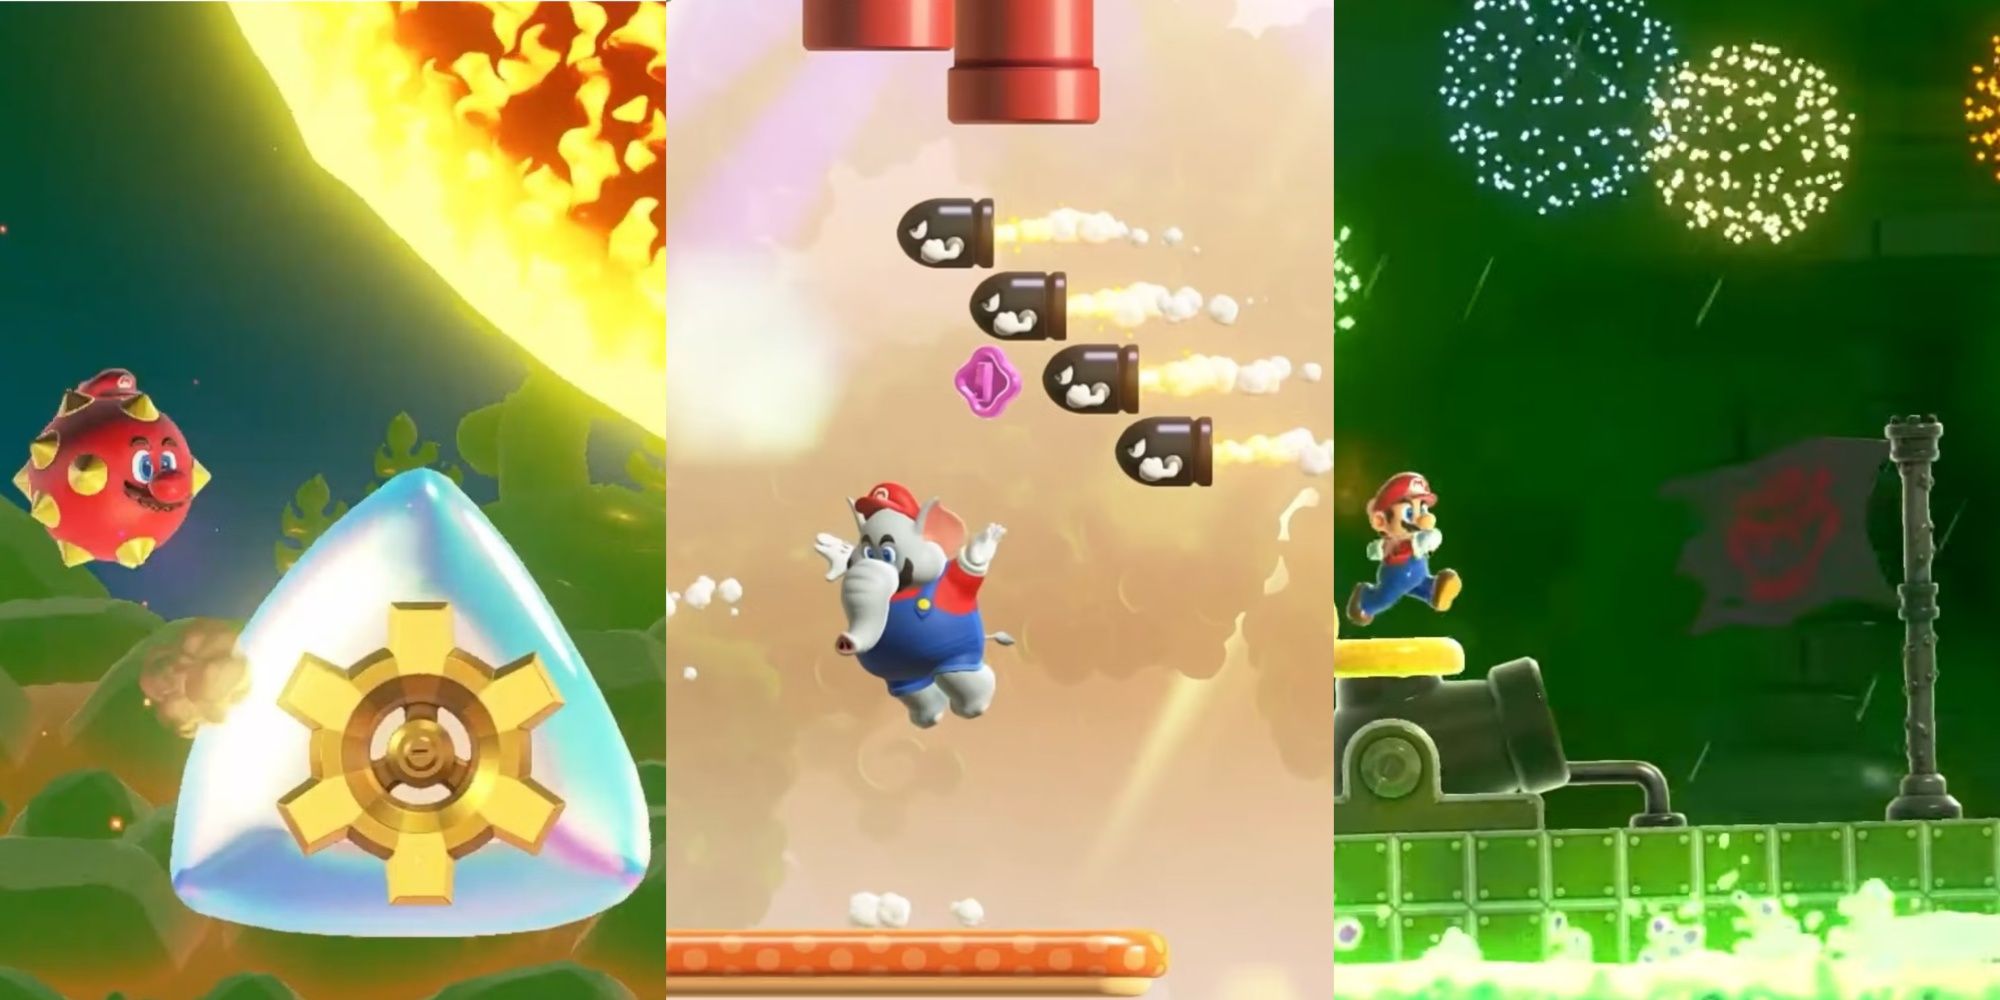 Super Mario Bros. Wonder' Preview: Nintendo on Acid